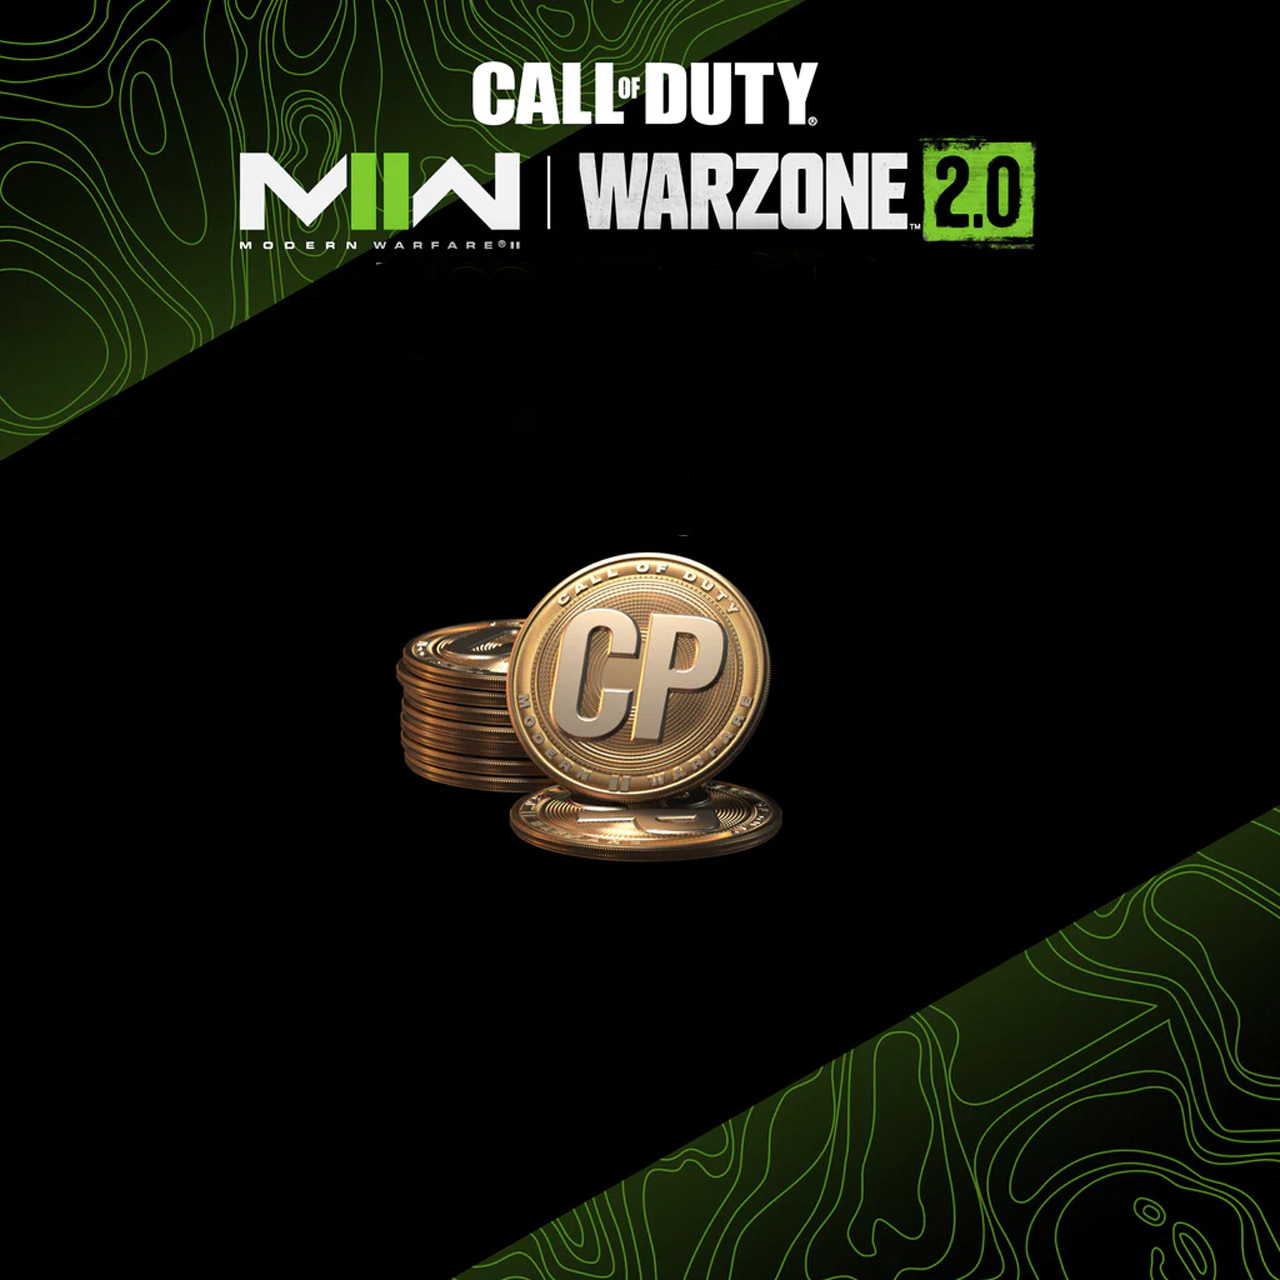 Call of Duty Warzone 2.0 Points xbox 8 - خرید سی پی بازی Call of Duty:Modern Warfare II or Warzone 2.0 برای Xbox